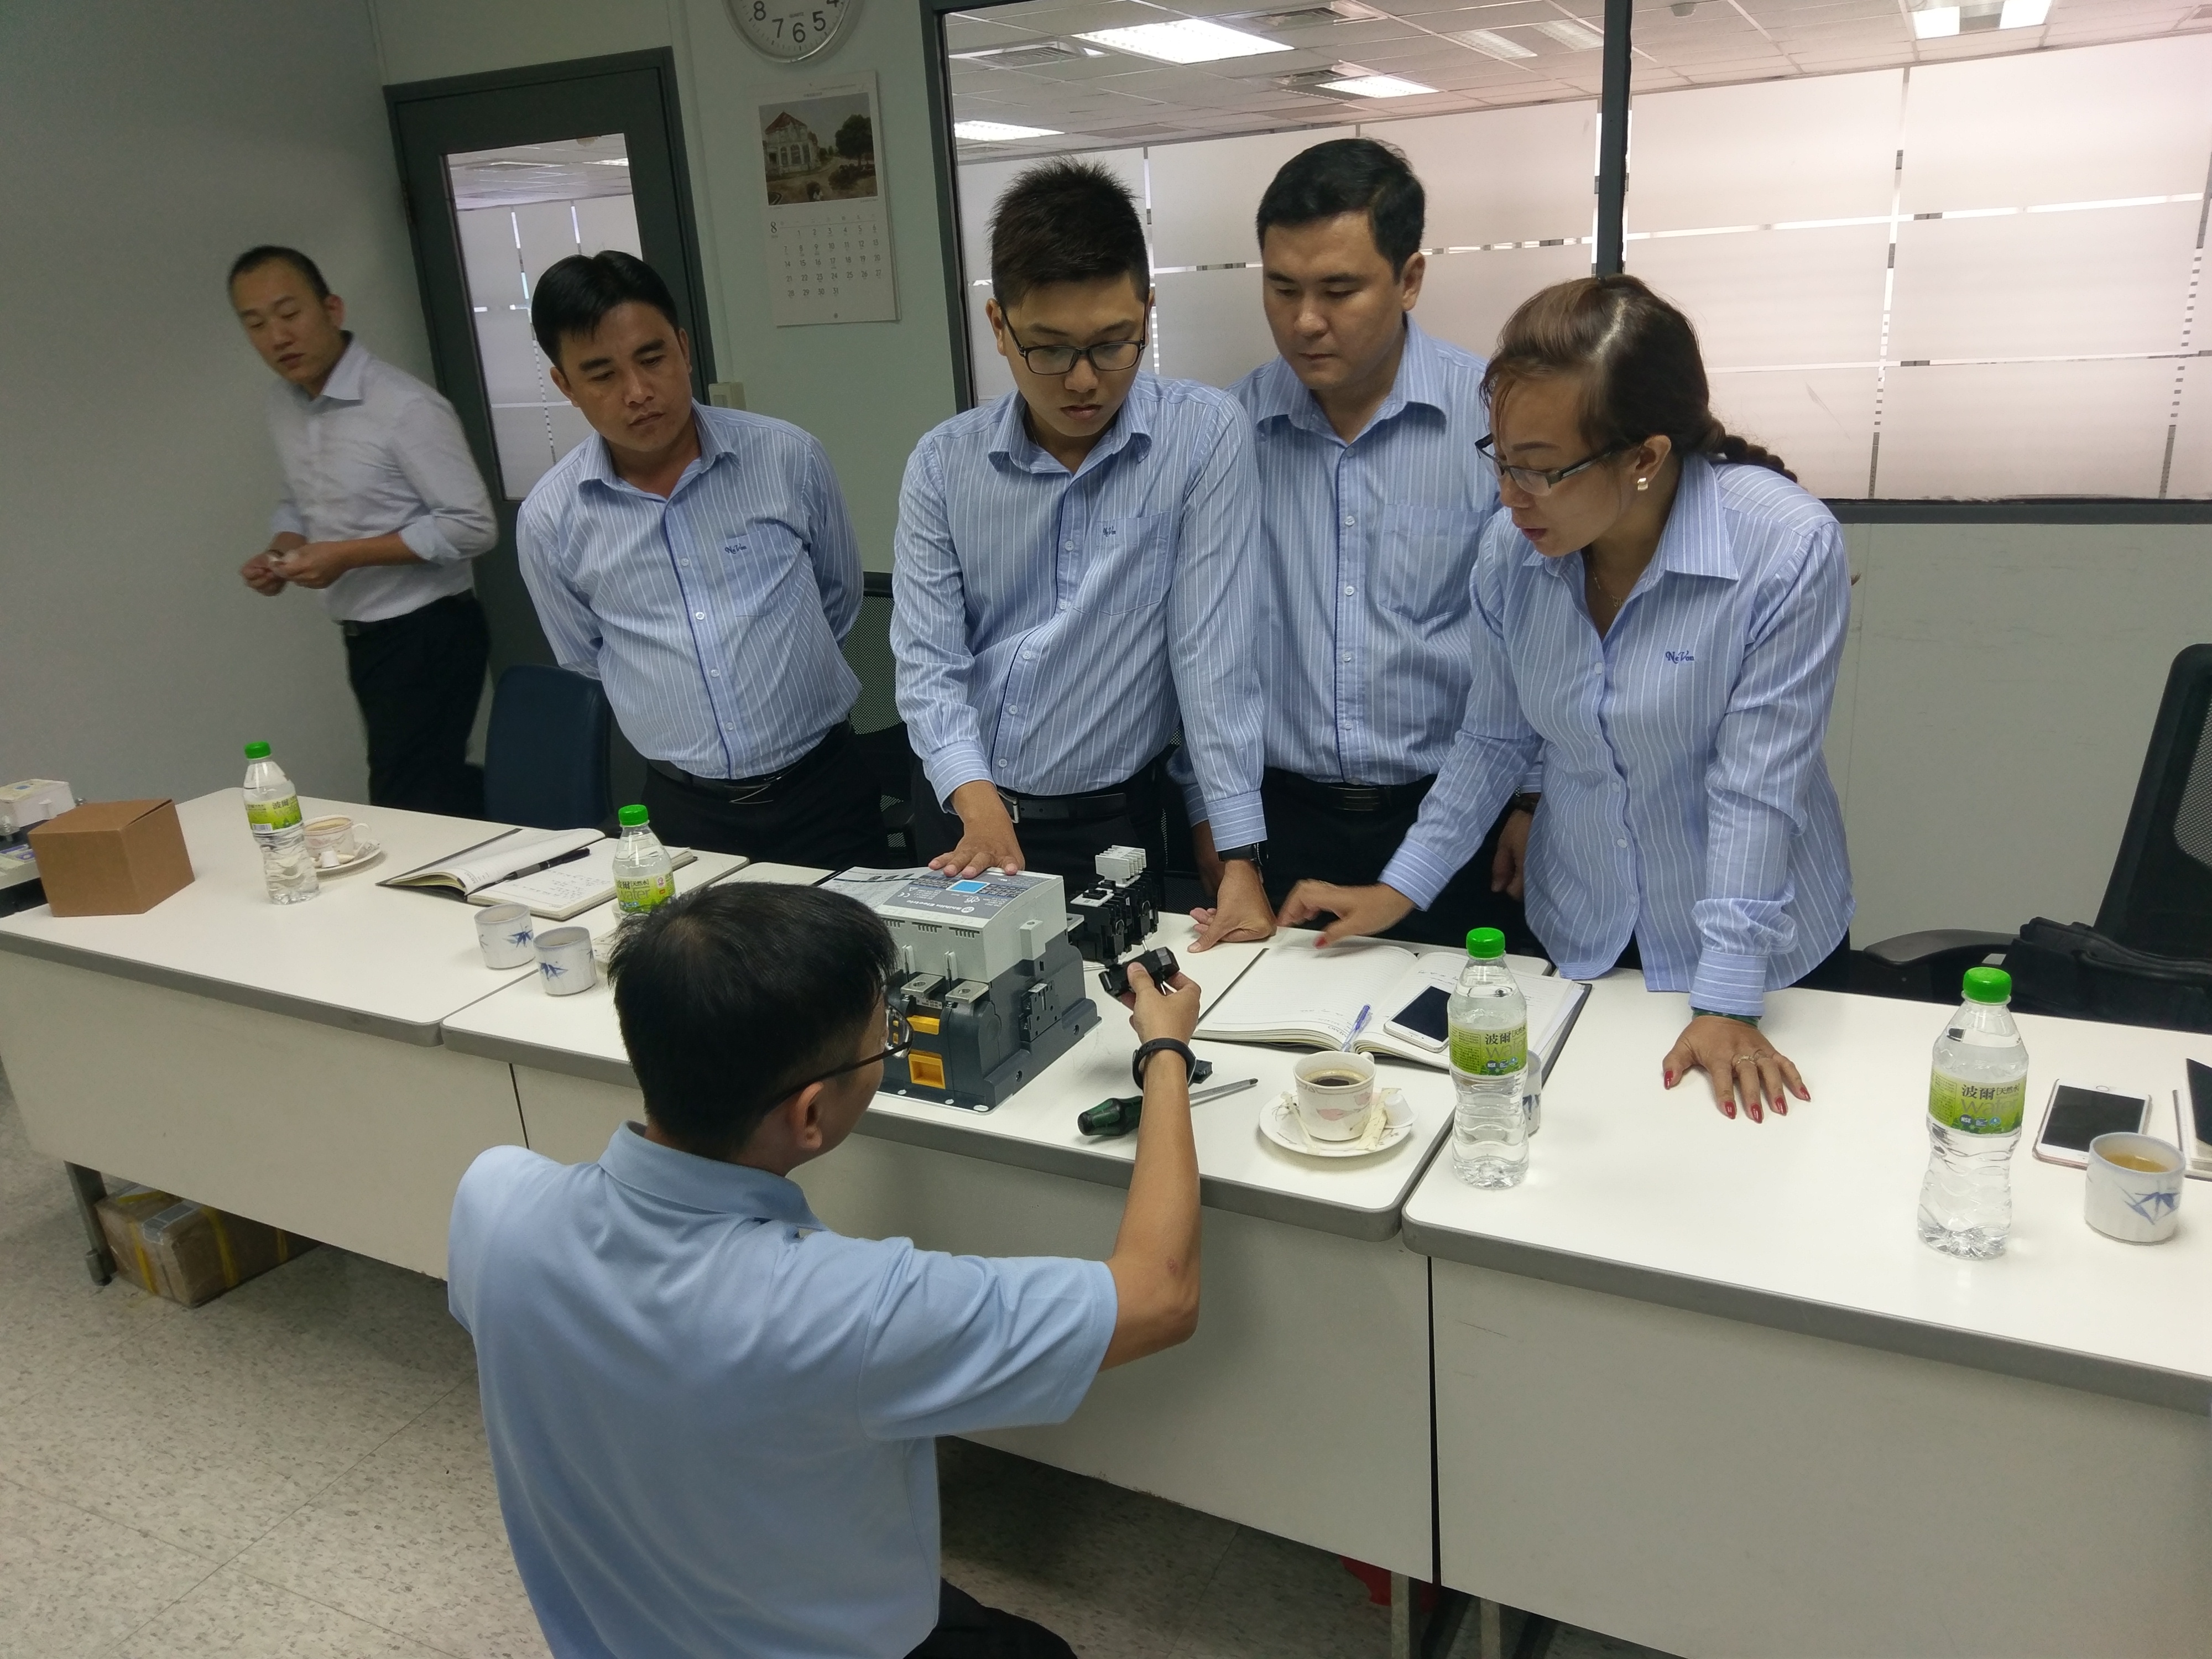 Clientes do Vietnã visitam Shihlin Electric